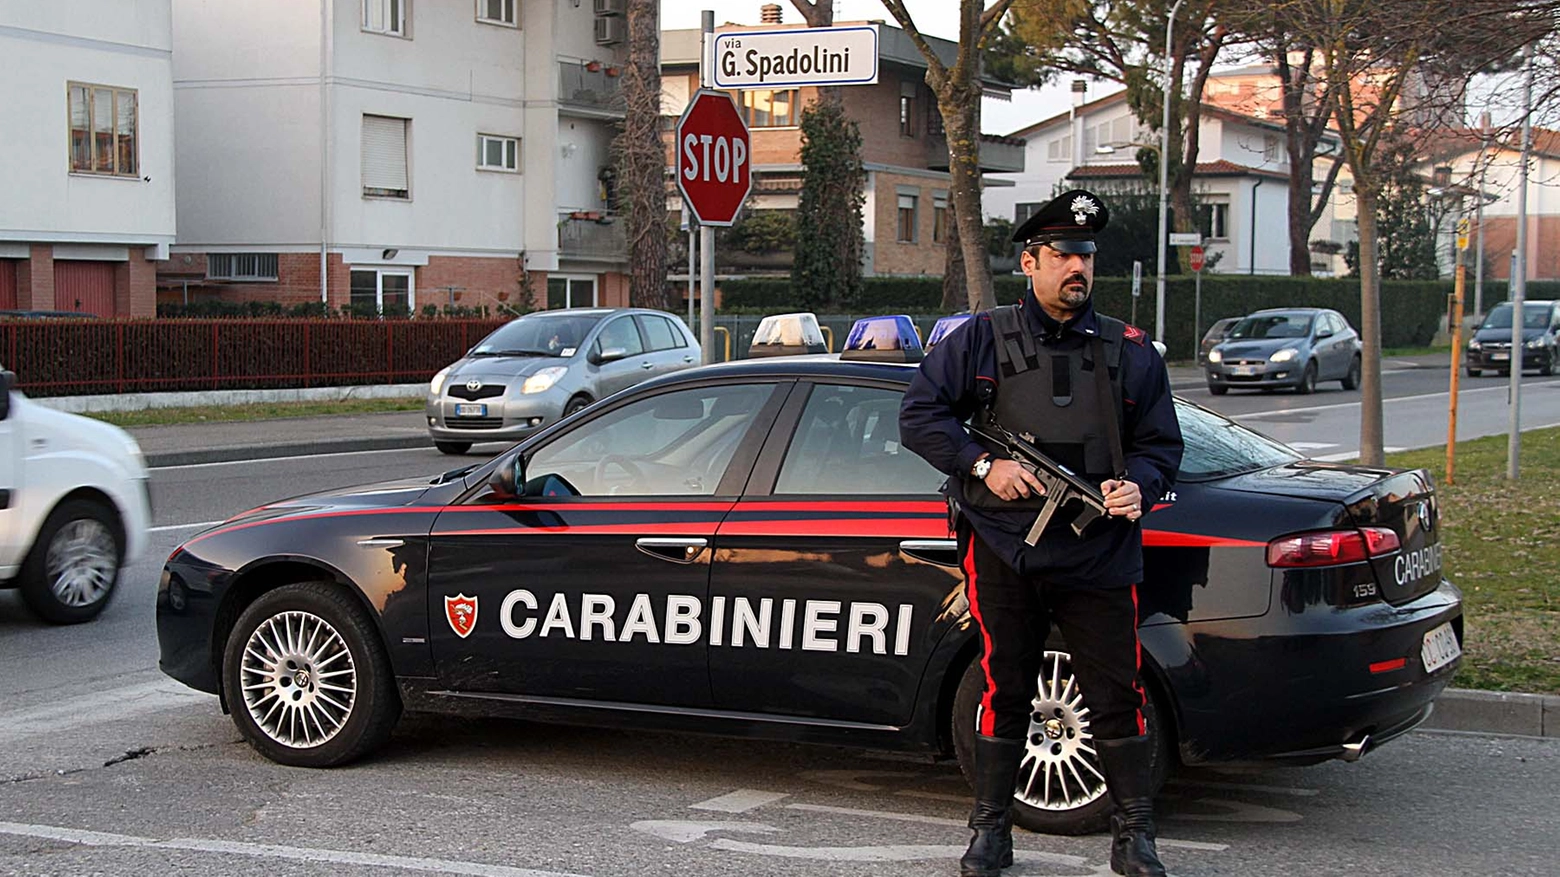 Carabinieri in azione (Germogli)